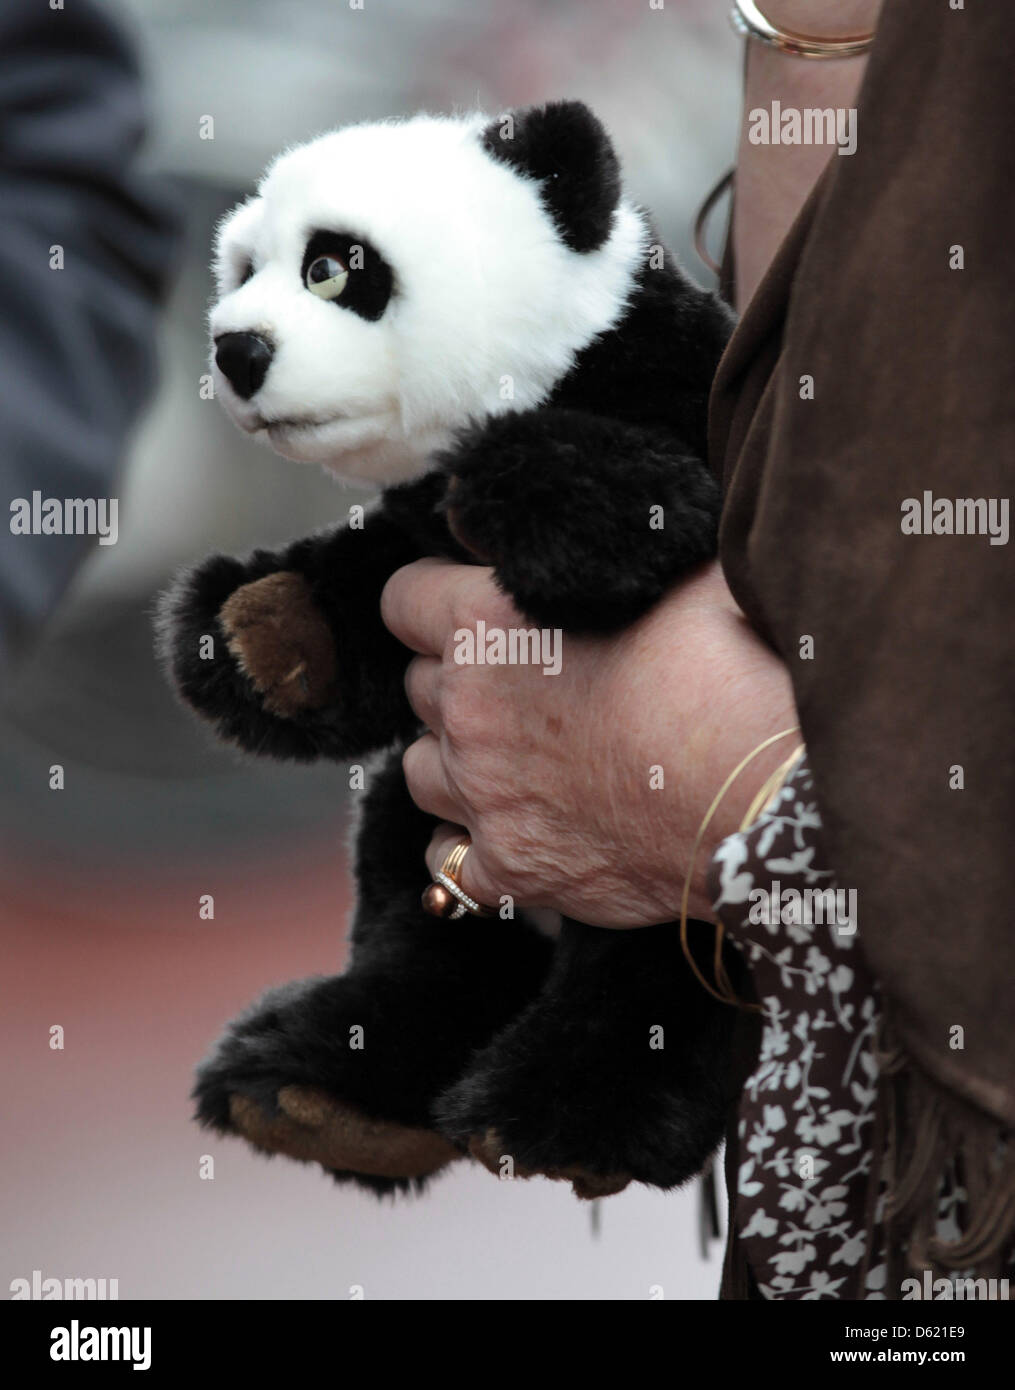 Plüschtier Panda die niederländische Königin Beatrix empfängt bei der Eröffnung der 50. Jahrestagung der World Wide Fund for Nature (WWF/WNF) auf dem Dampfer SS Rotterdam, Niederlande, Rotterdam 8. Mai 2012. Foto: Albert Nieboer Niederlande Stockfoto